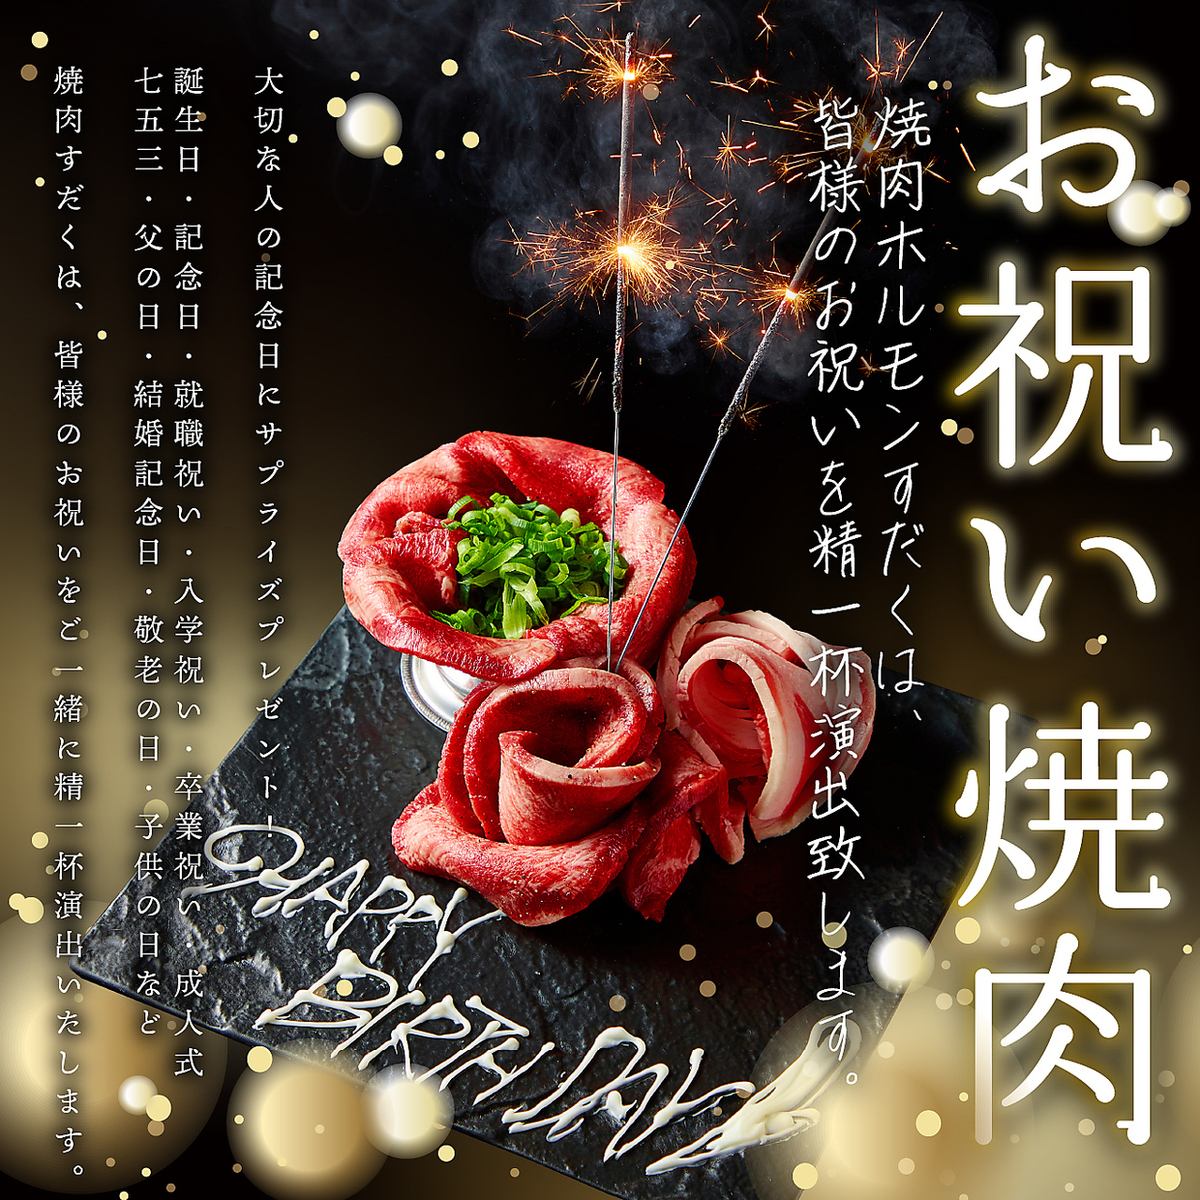 ◇使用近江牛和北海道米的烤肉店 ◇請在家庭慶祝活動時使用